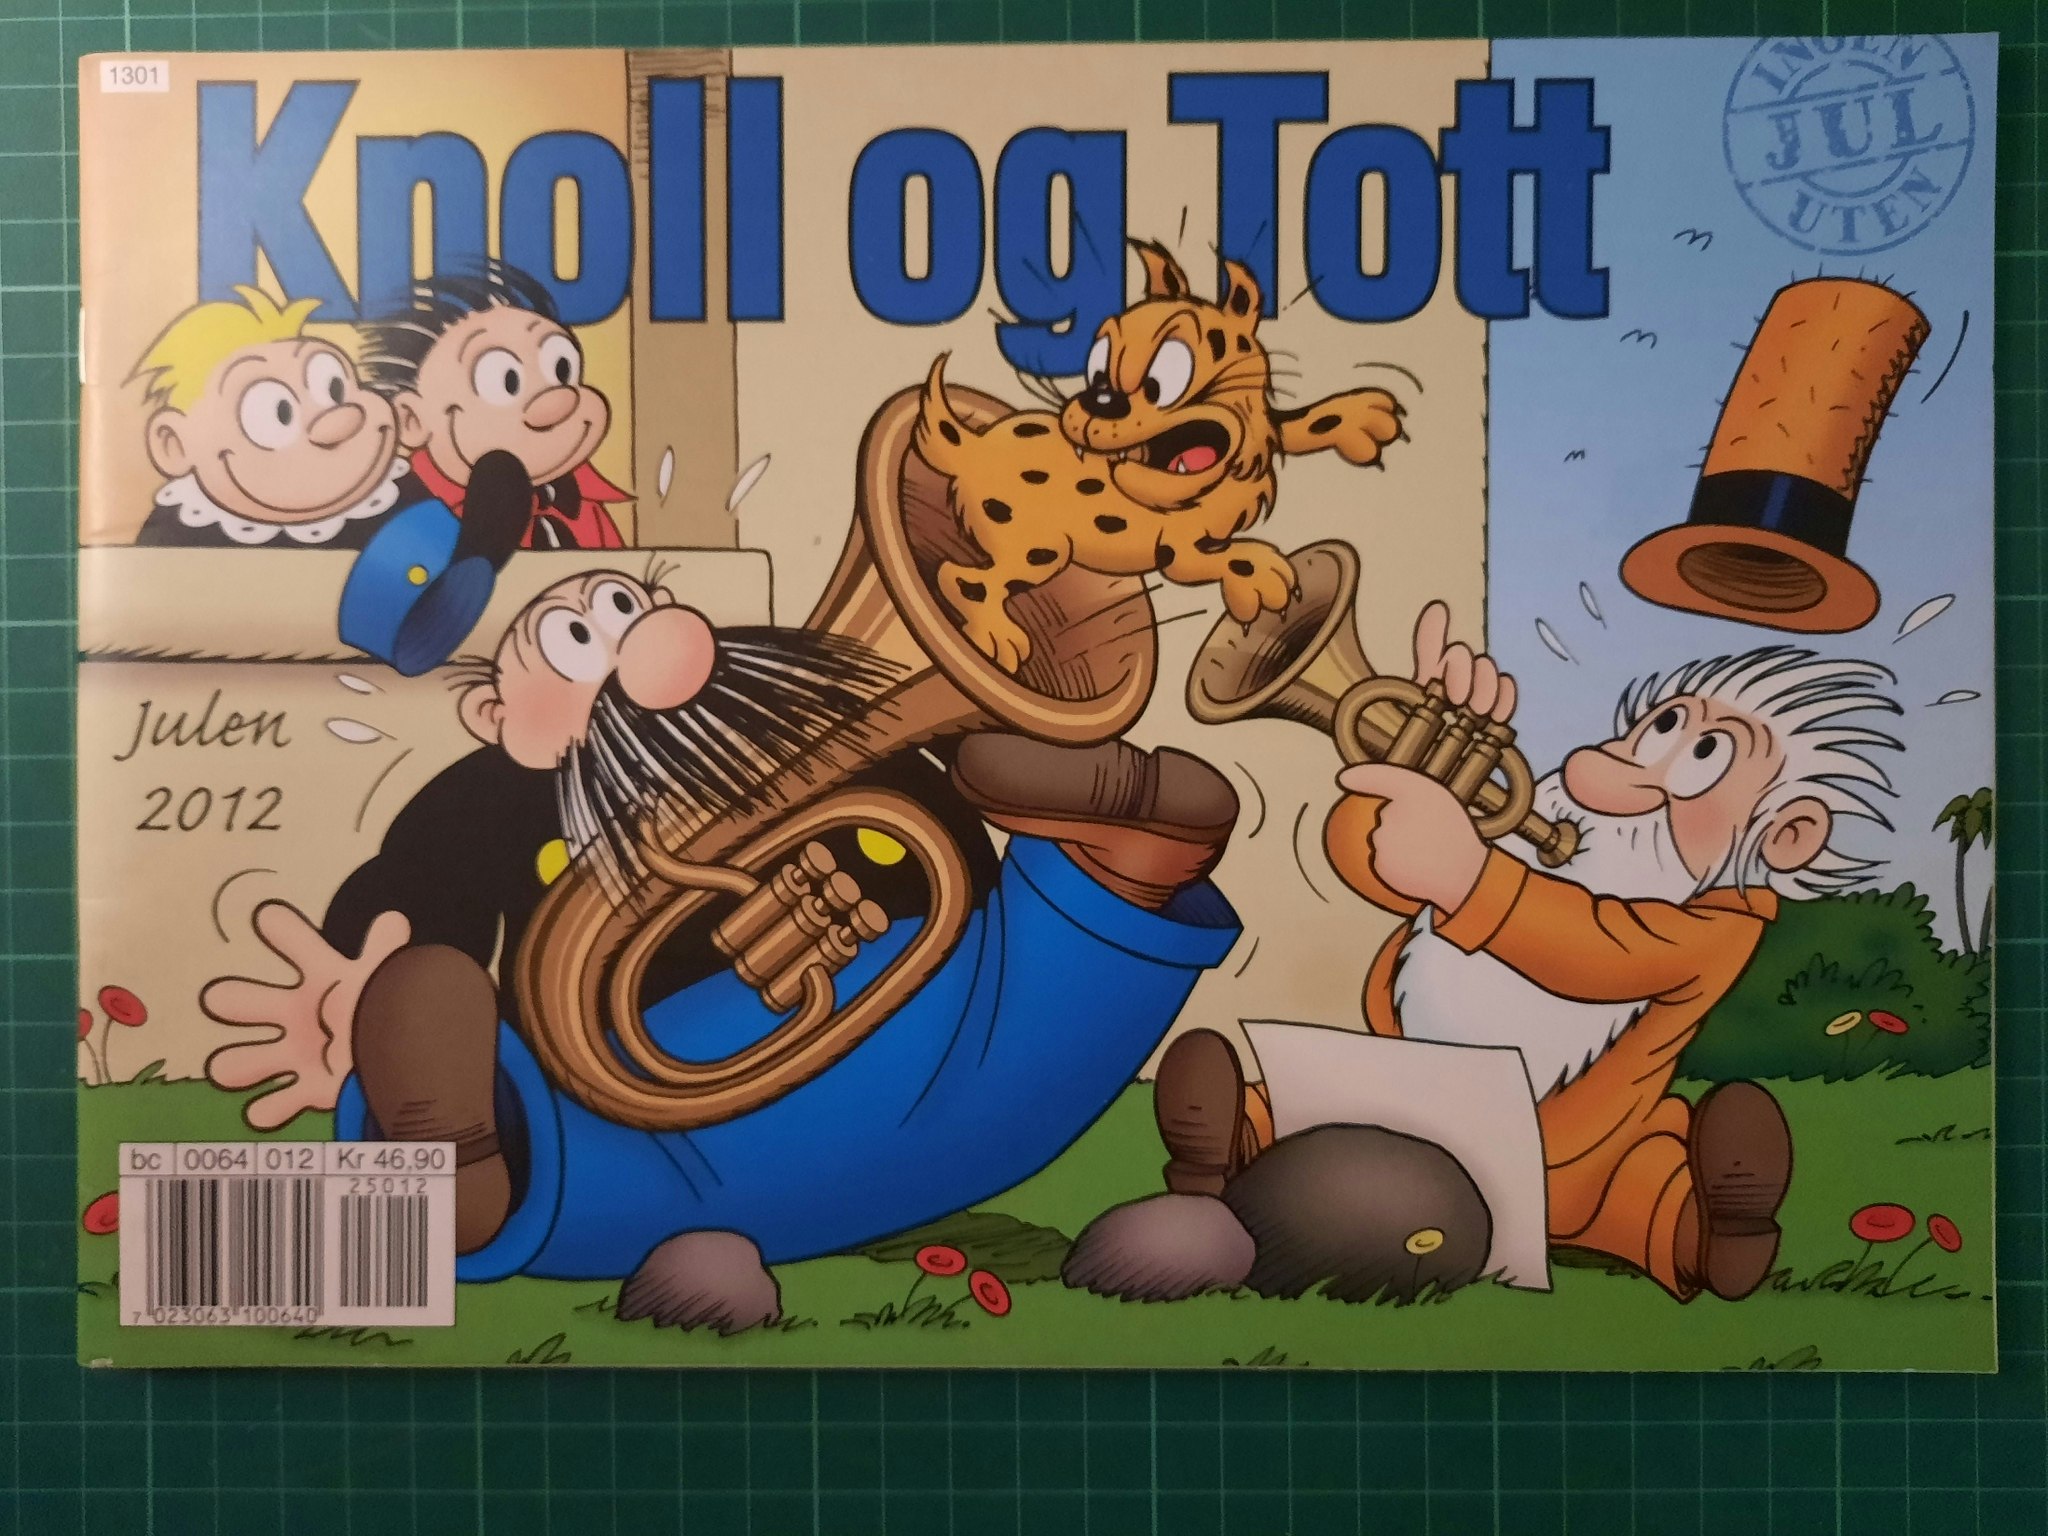 Knoll og Tott 2012